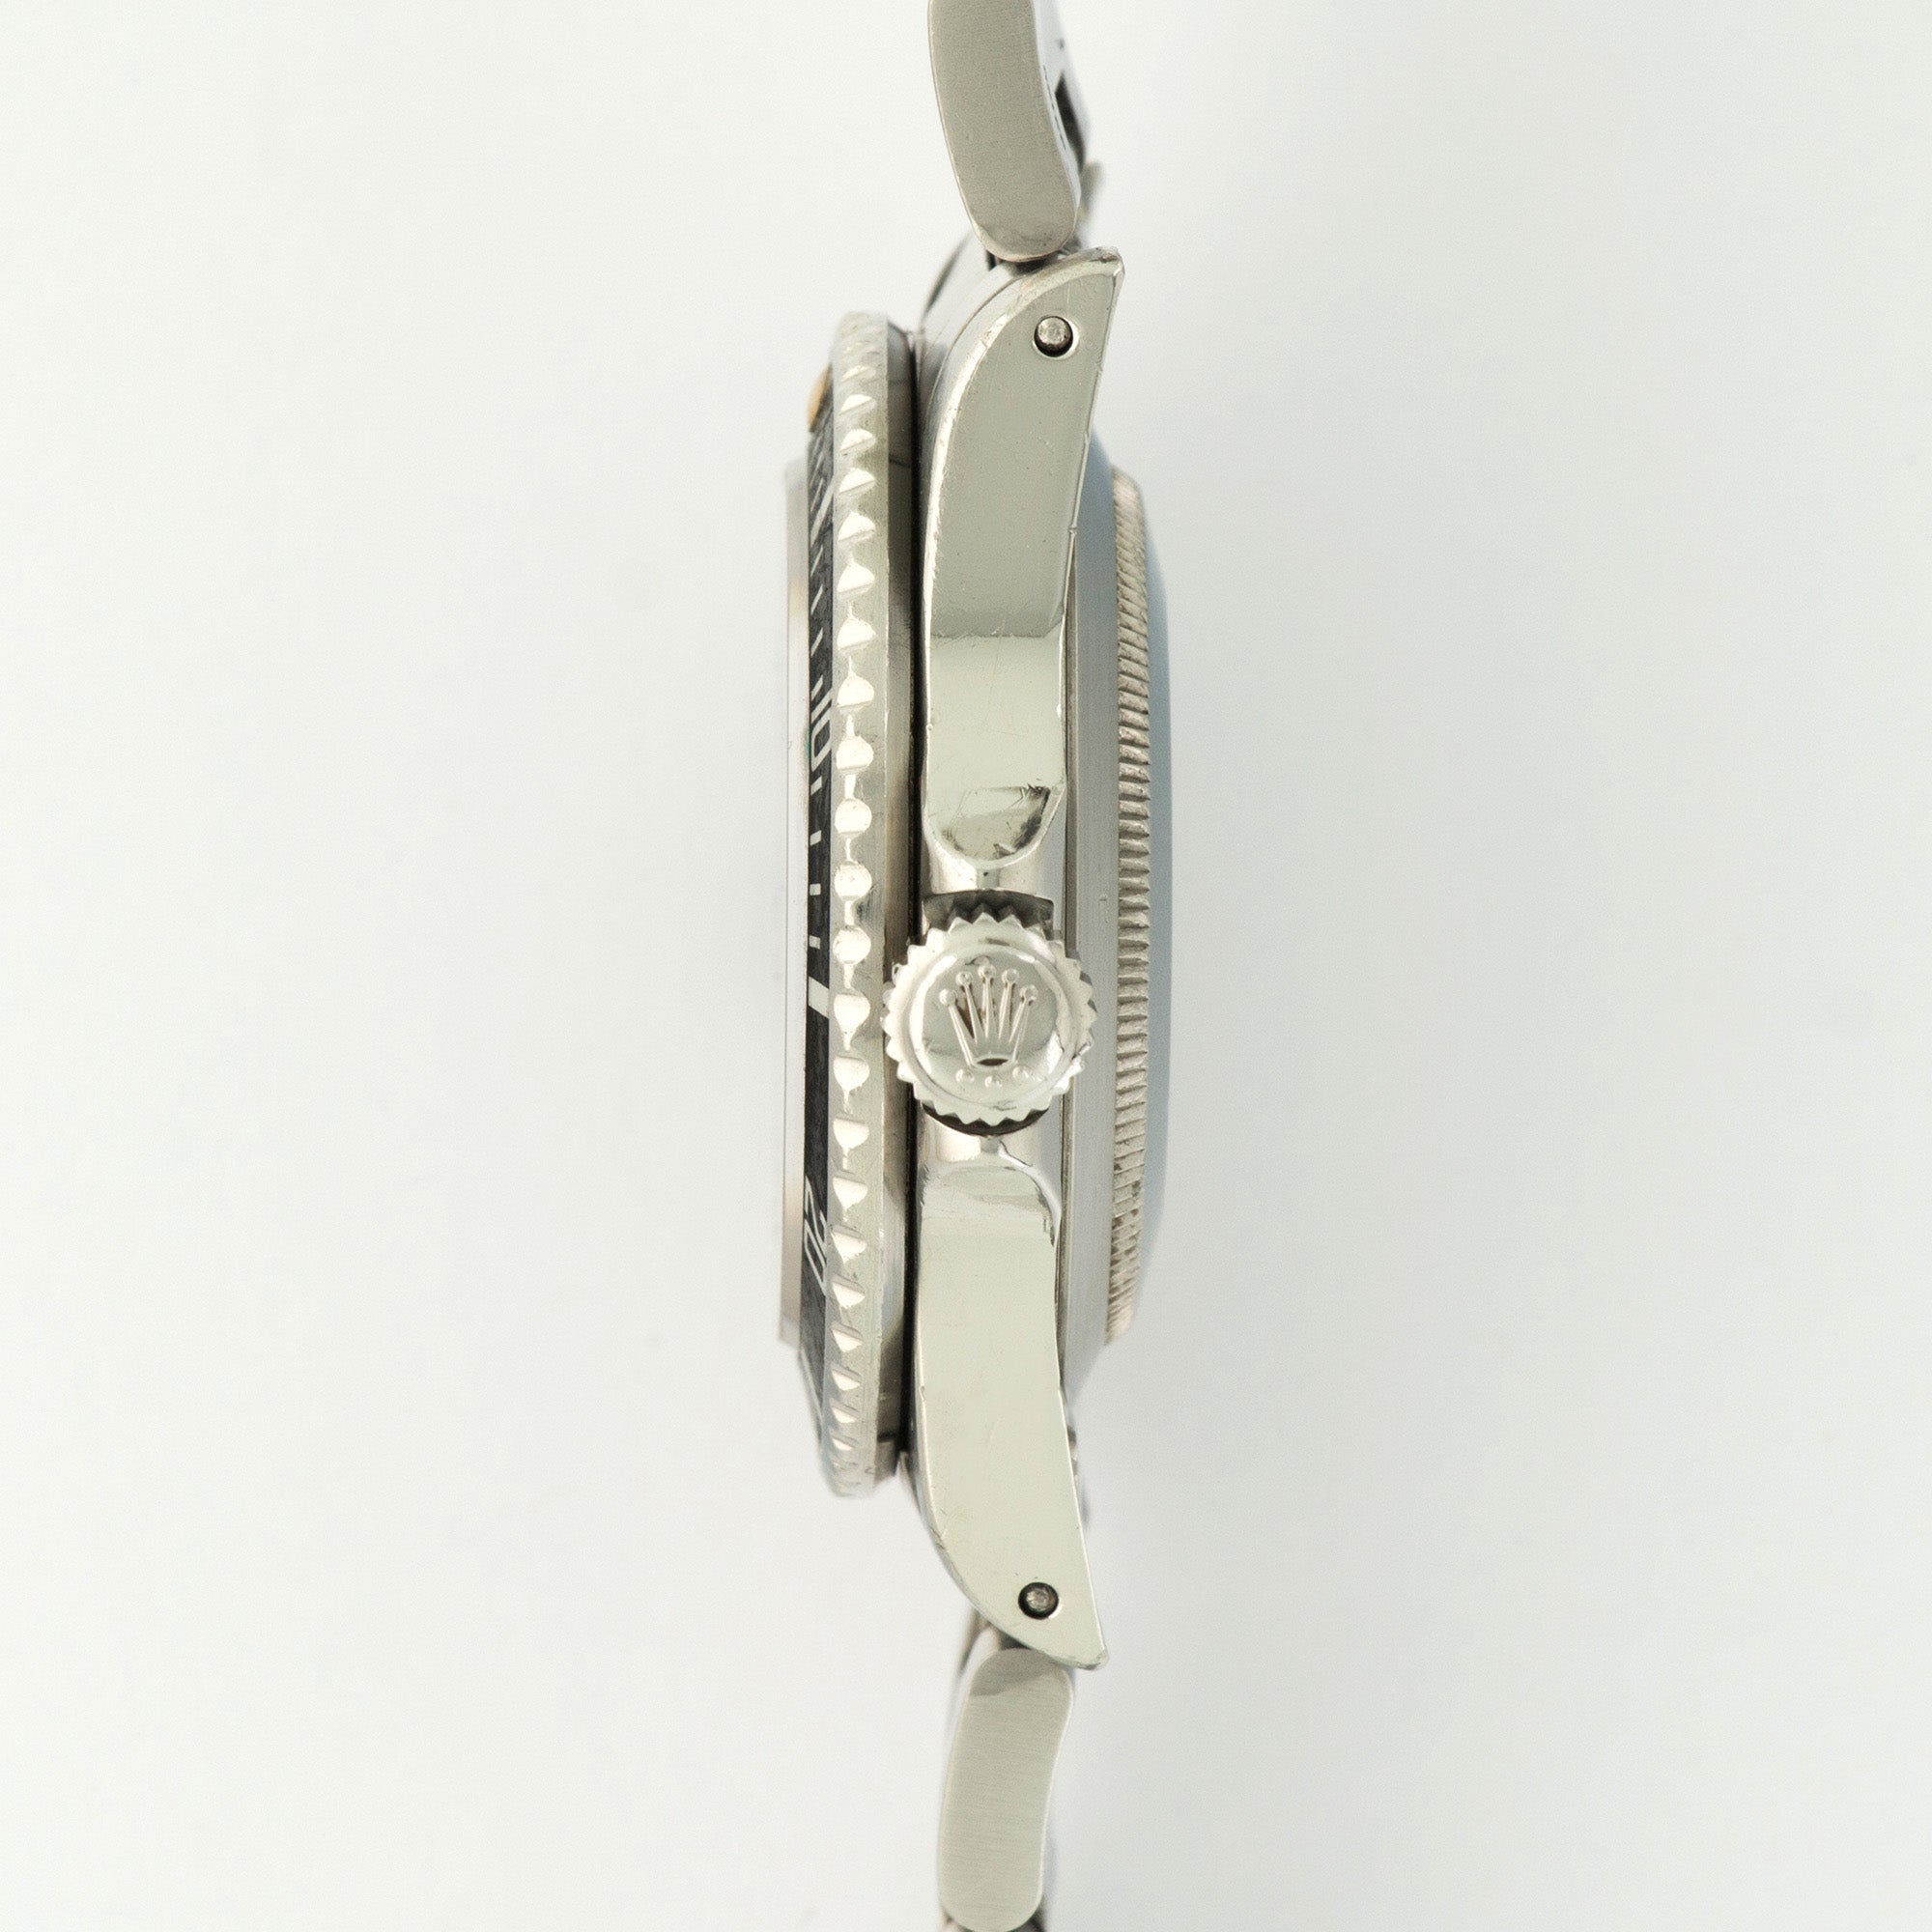 Rolex - Vintage Rolex Submariner Stainless Steel Ref. 16800 - The Keystone Watches